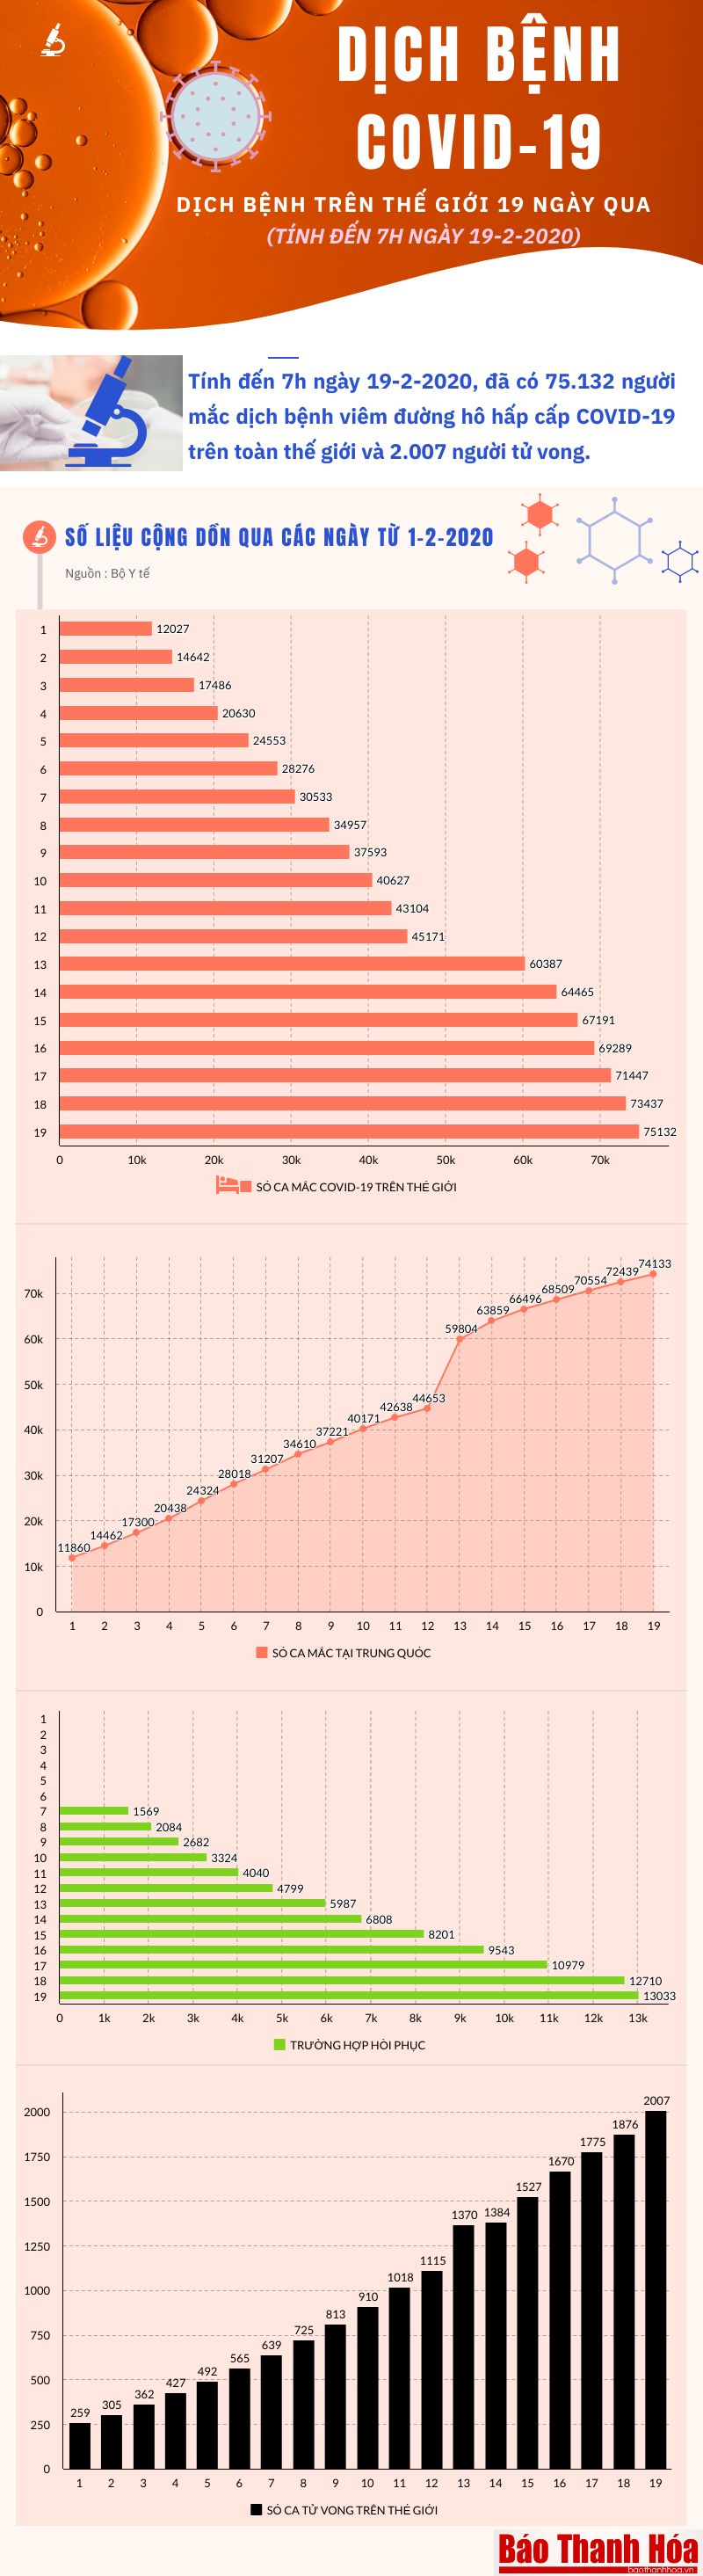 [Infographics] - 75.132 người mắc dịch bệnh viêm đường hô hấp cấp COVID-19 trên toàn thế giới